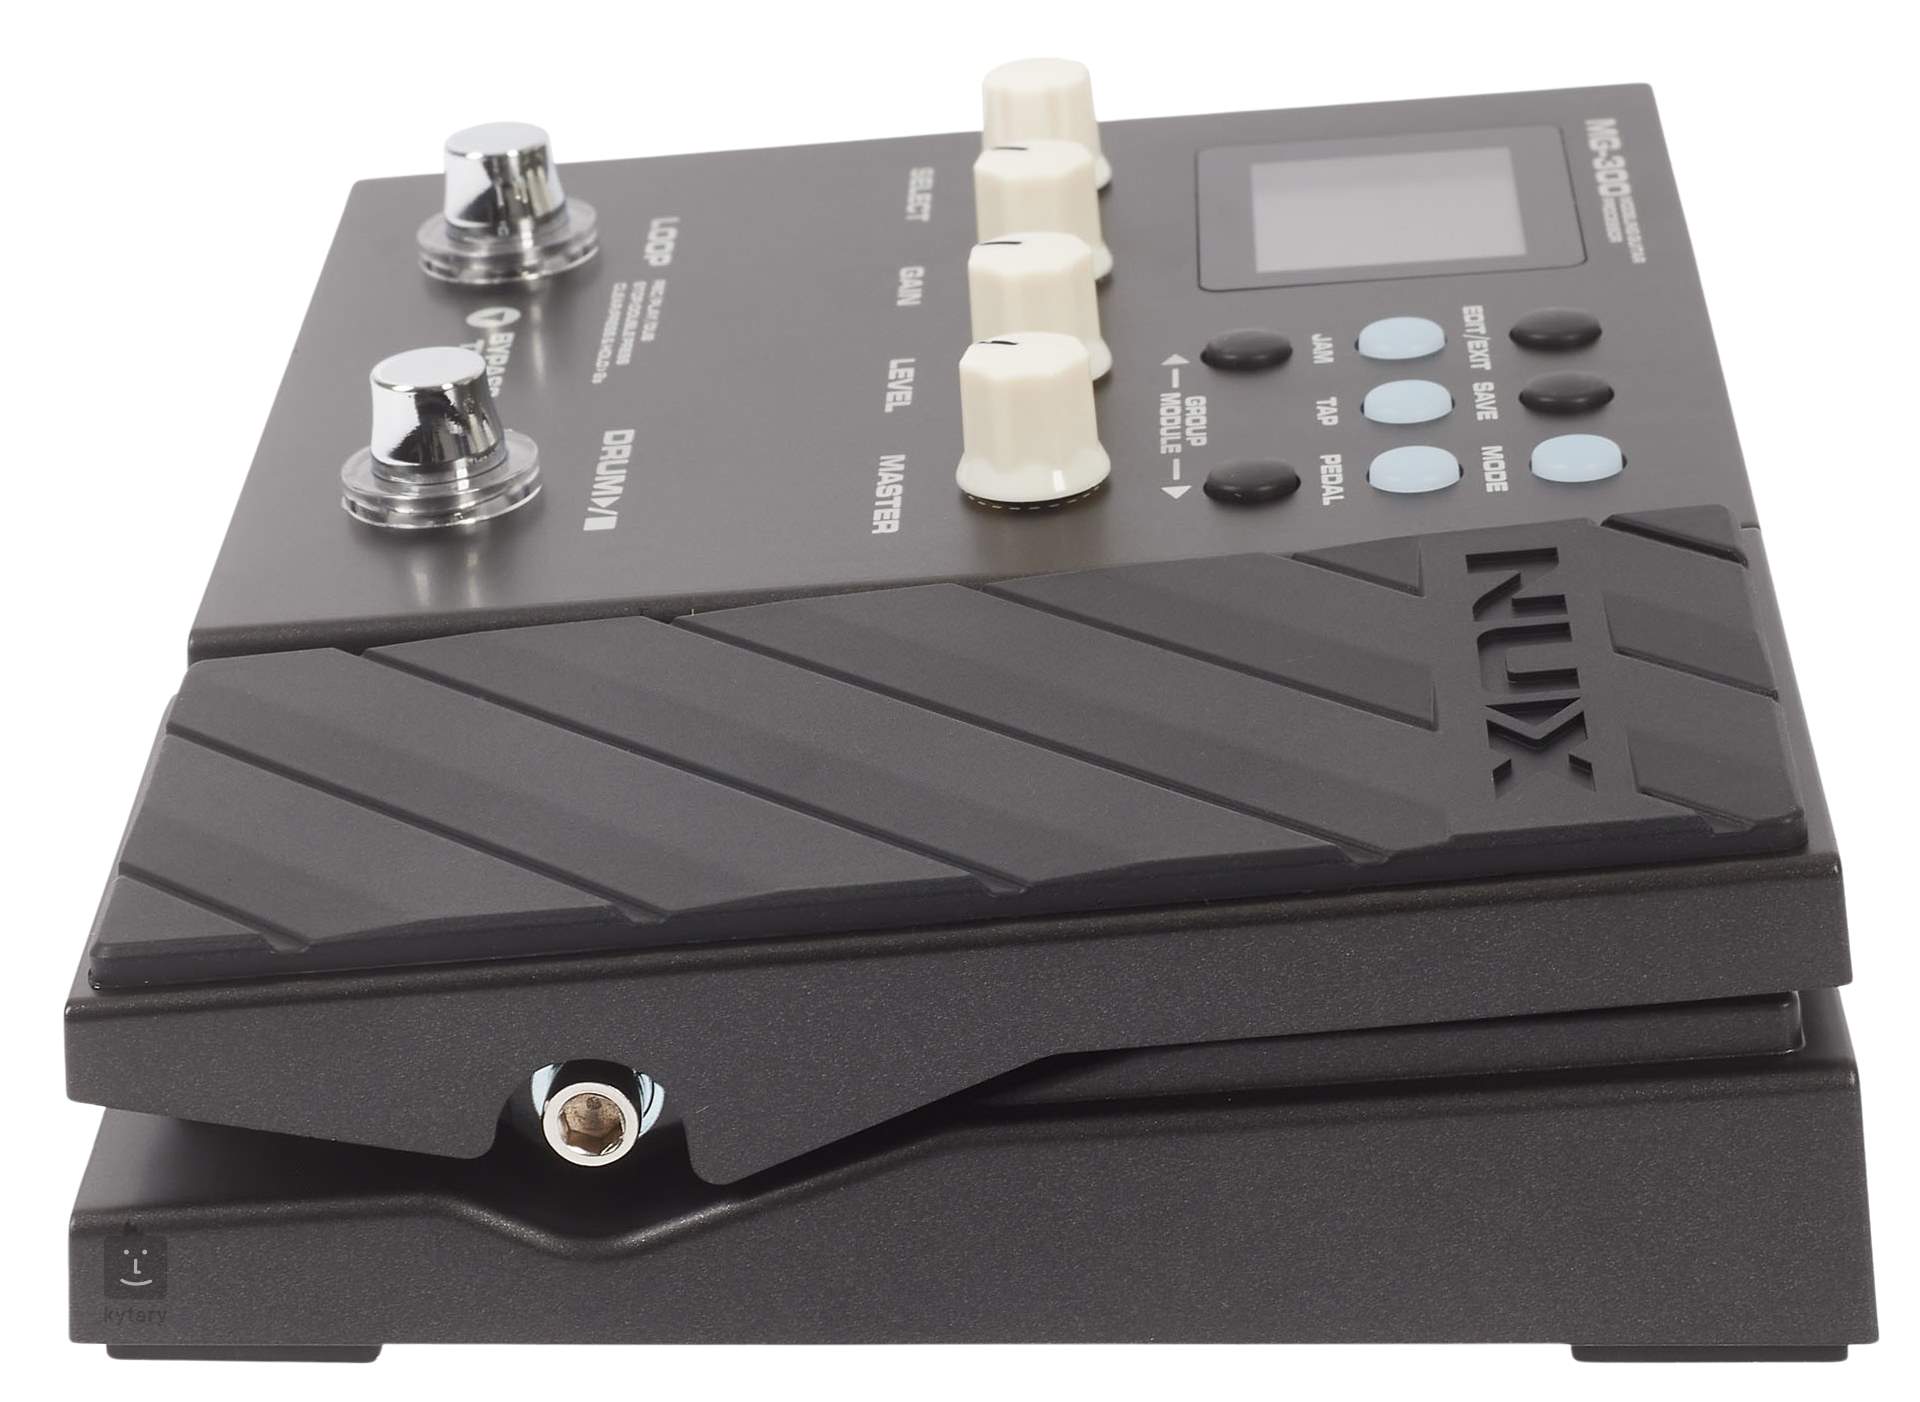 Nux MG-300 - Pédalier multi-effets pour guitare - Pédale d'effet